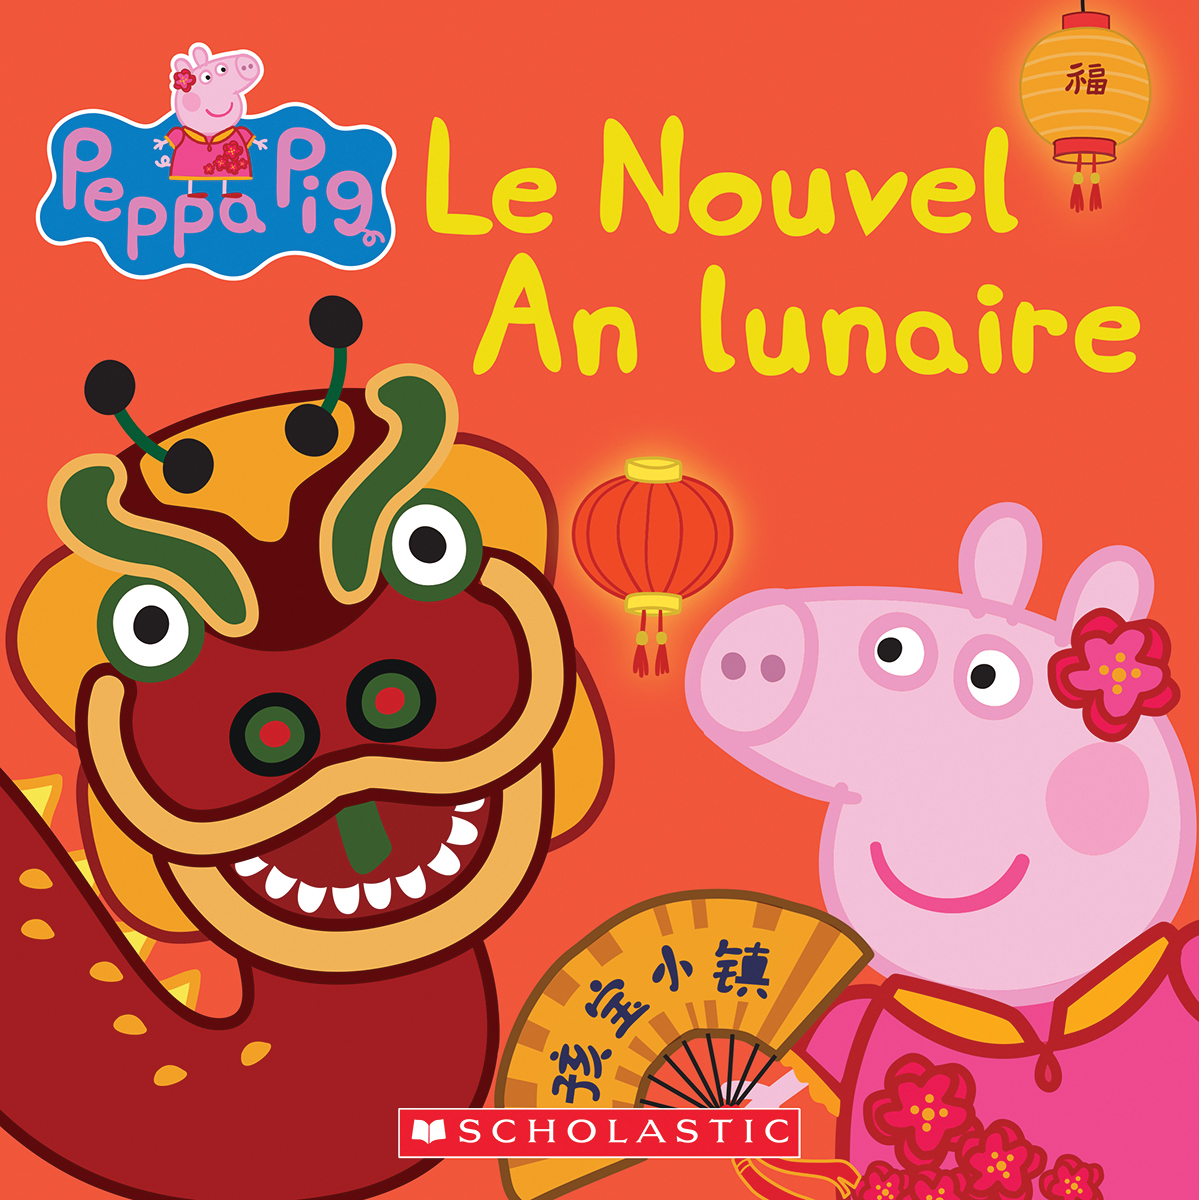  Peppa Pig : Le Nouvel An lunaire 